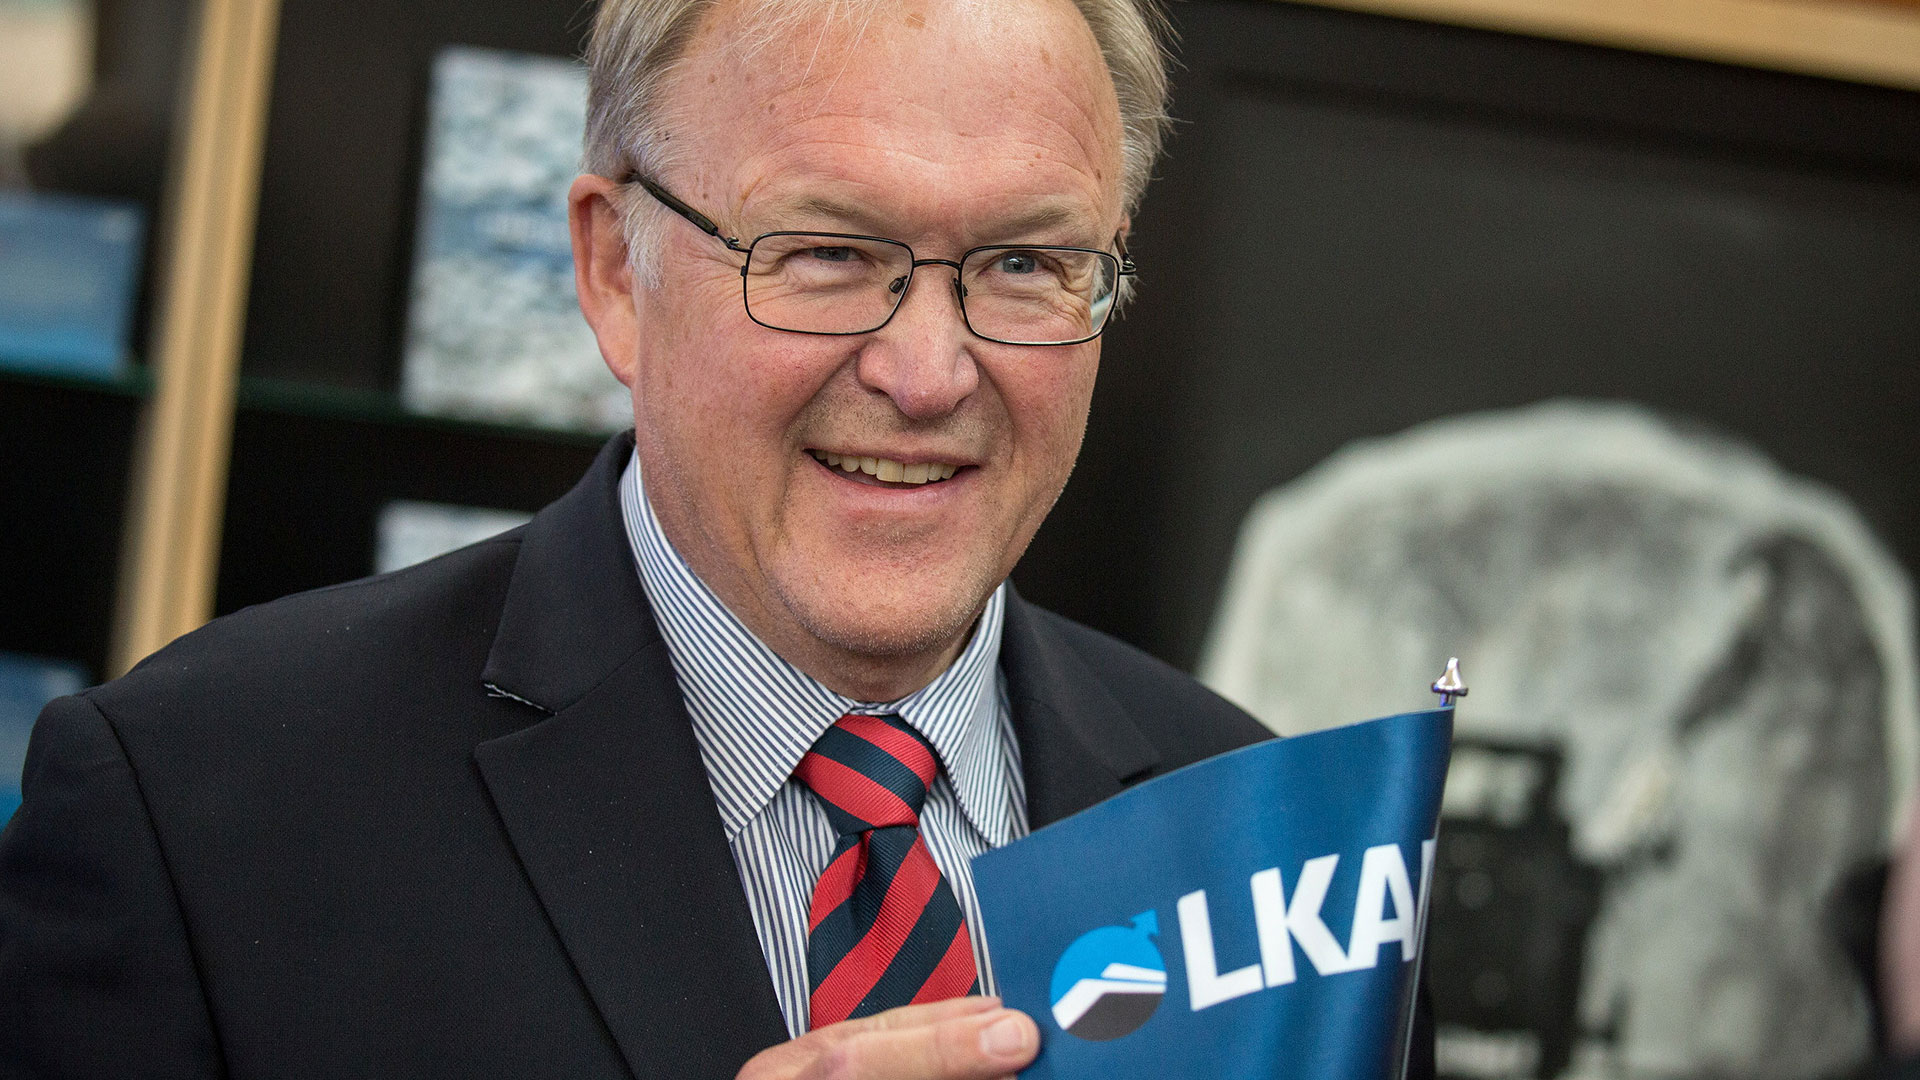 Göran Persson med LKAB-flagga. Foto: Fredric Alm.